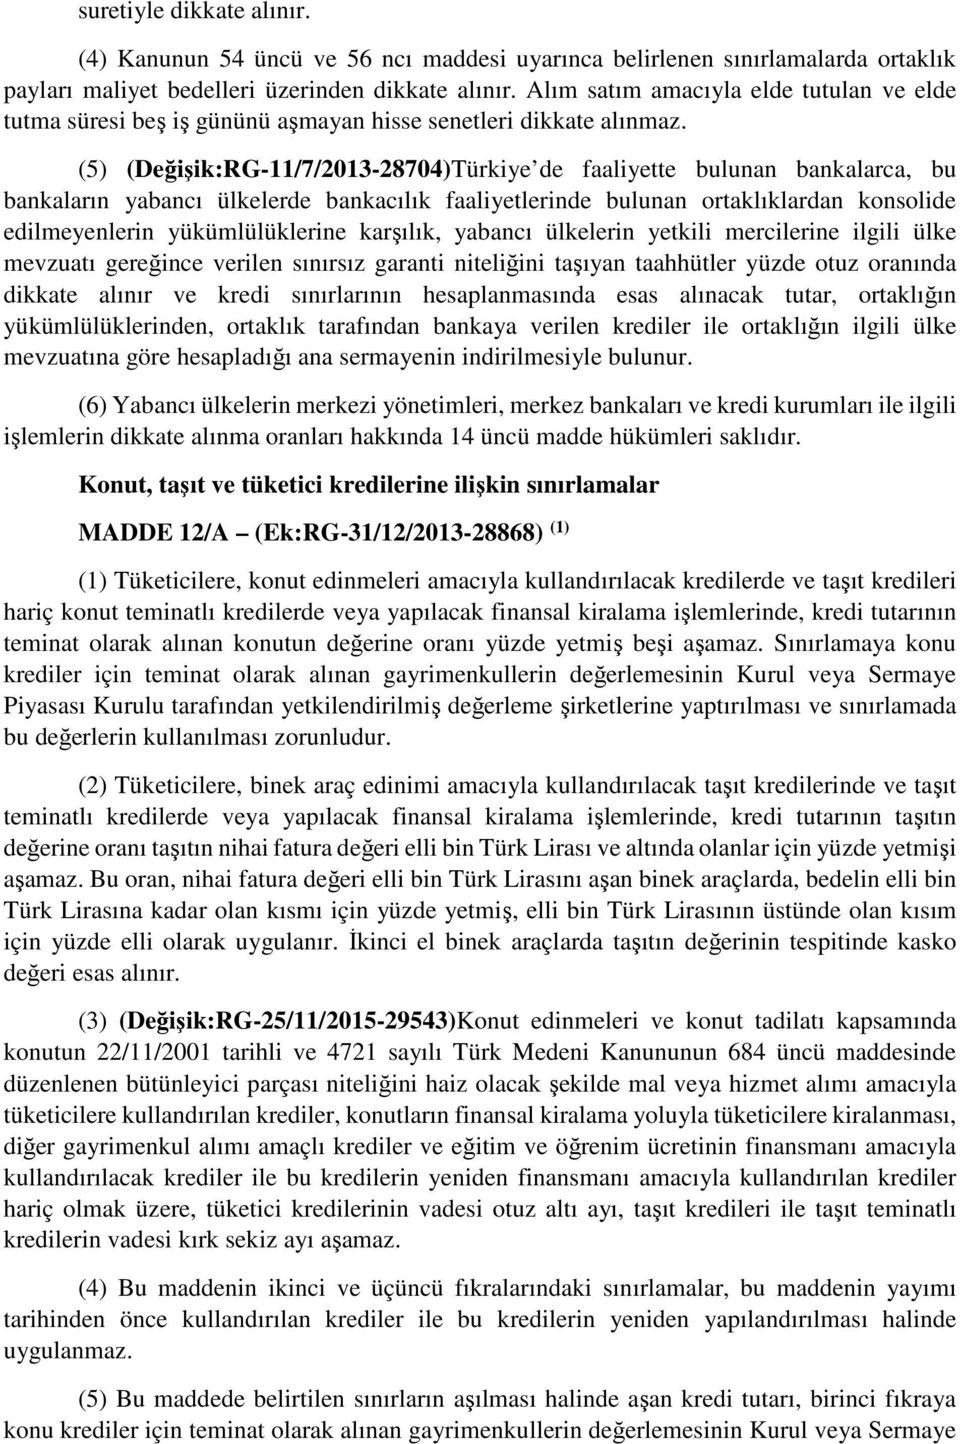 (5) (Değişik:RG-11/7/2013-28704)Türkiye de faaliyette bulunan bankalarca, bu bankaların yabancı ülkelerde bankacılık faaliyetlerinde bulunan ortaklıklardan konsolide edilmeyenlerin yükümlülüklerine